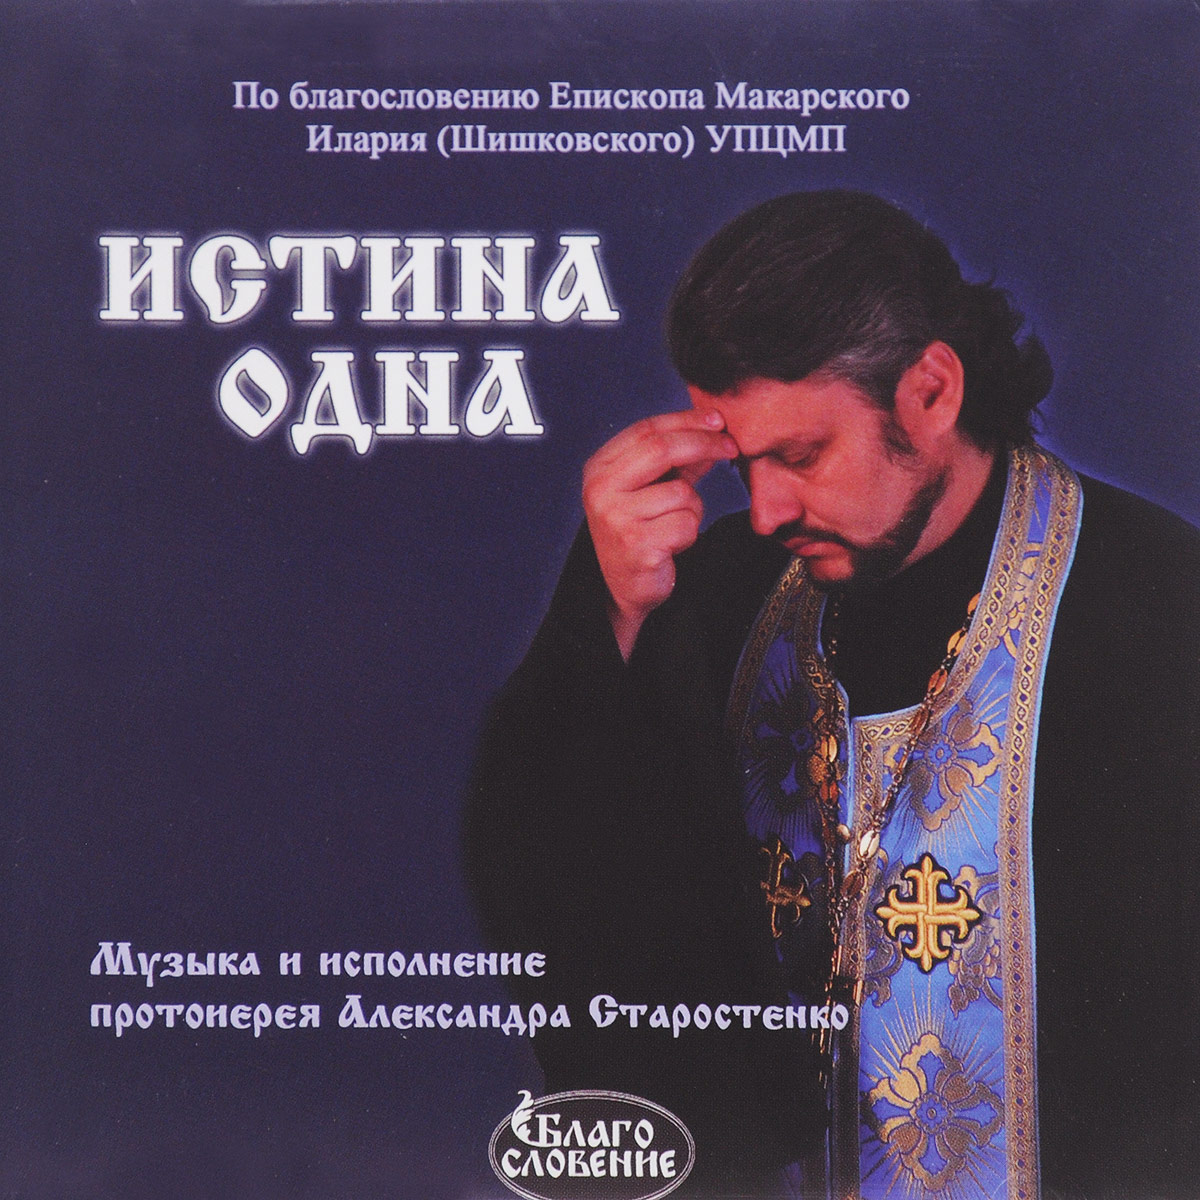 Православные песни сборник